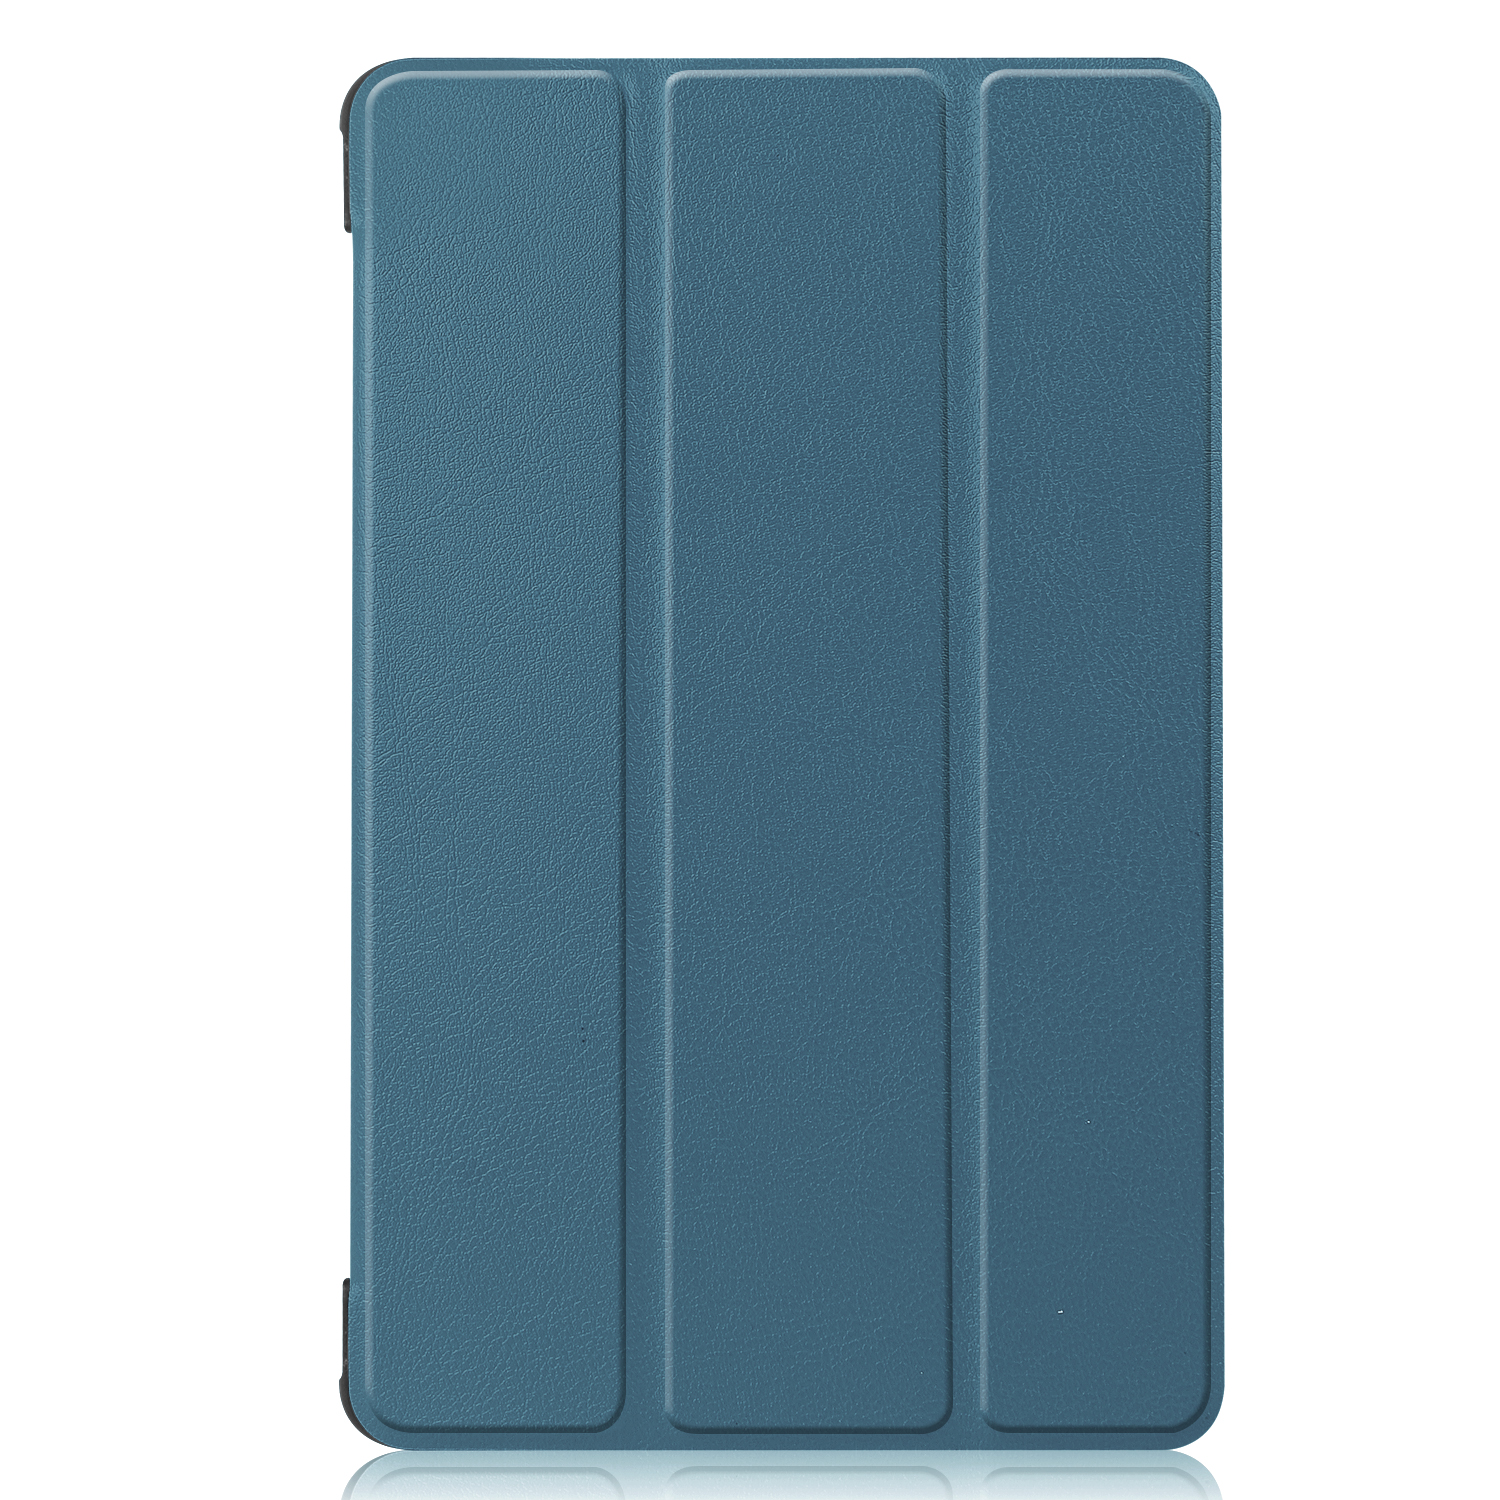 Schutzhülle für Bookcover MatePad Grün LOBWERK Kunstleder, Huawei Hülle T8 8.0 Zoll